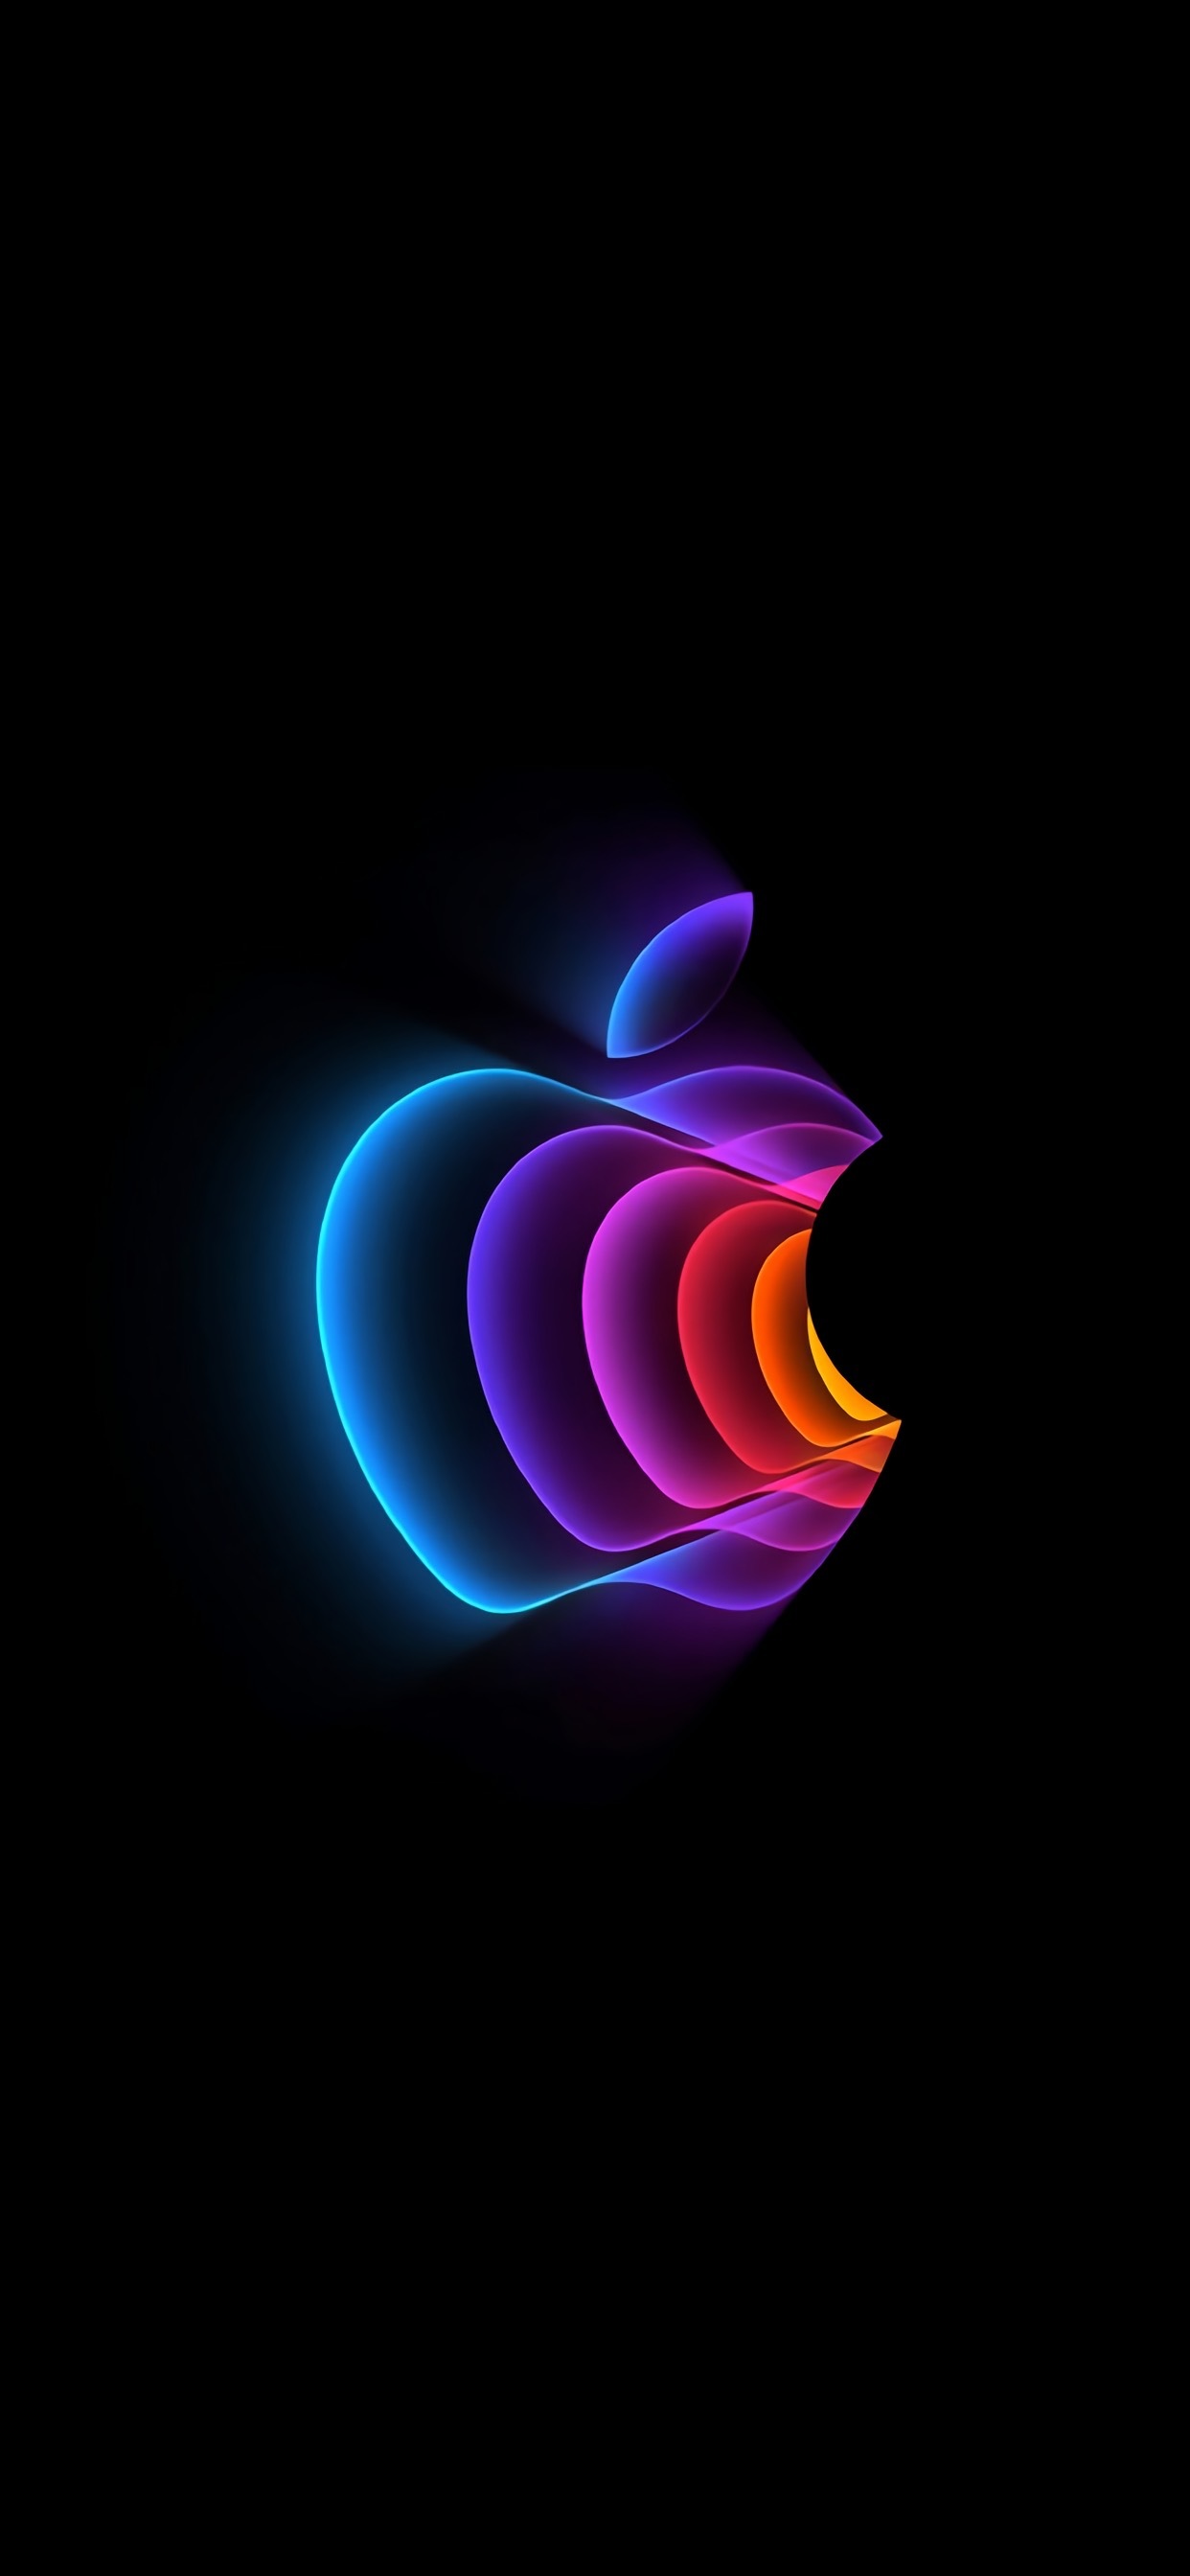 苹果多彩元素logo手机壁纸